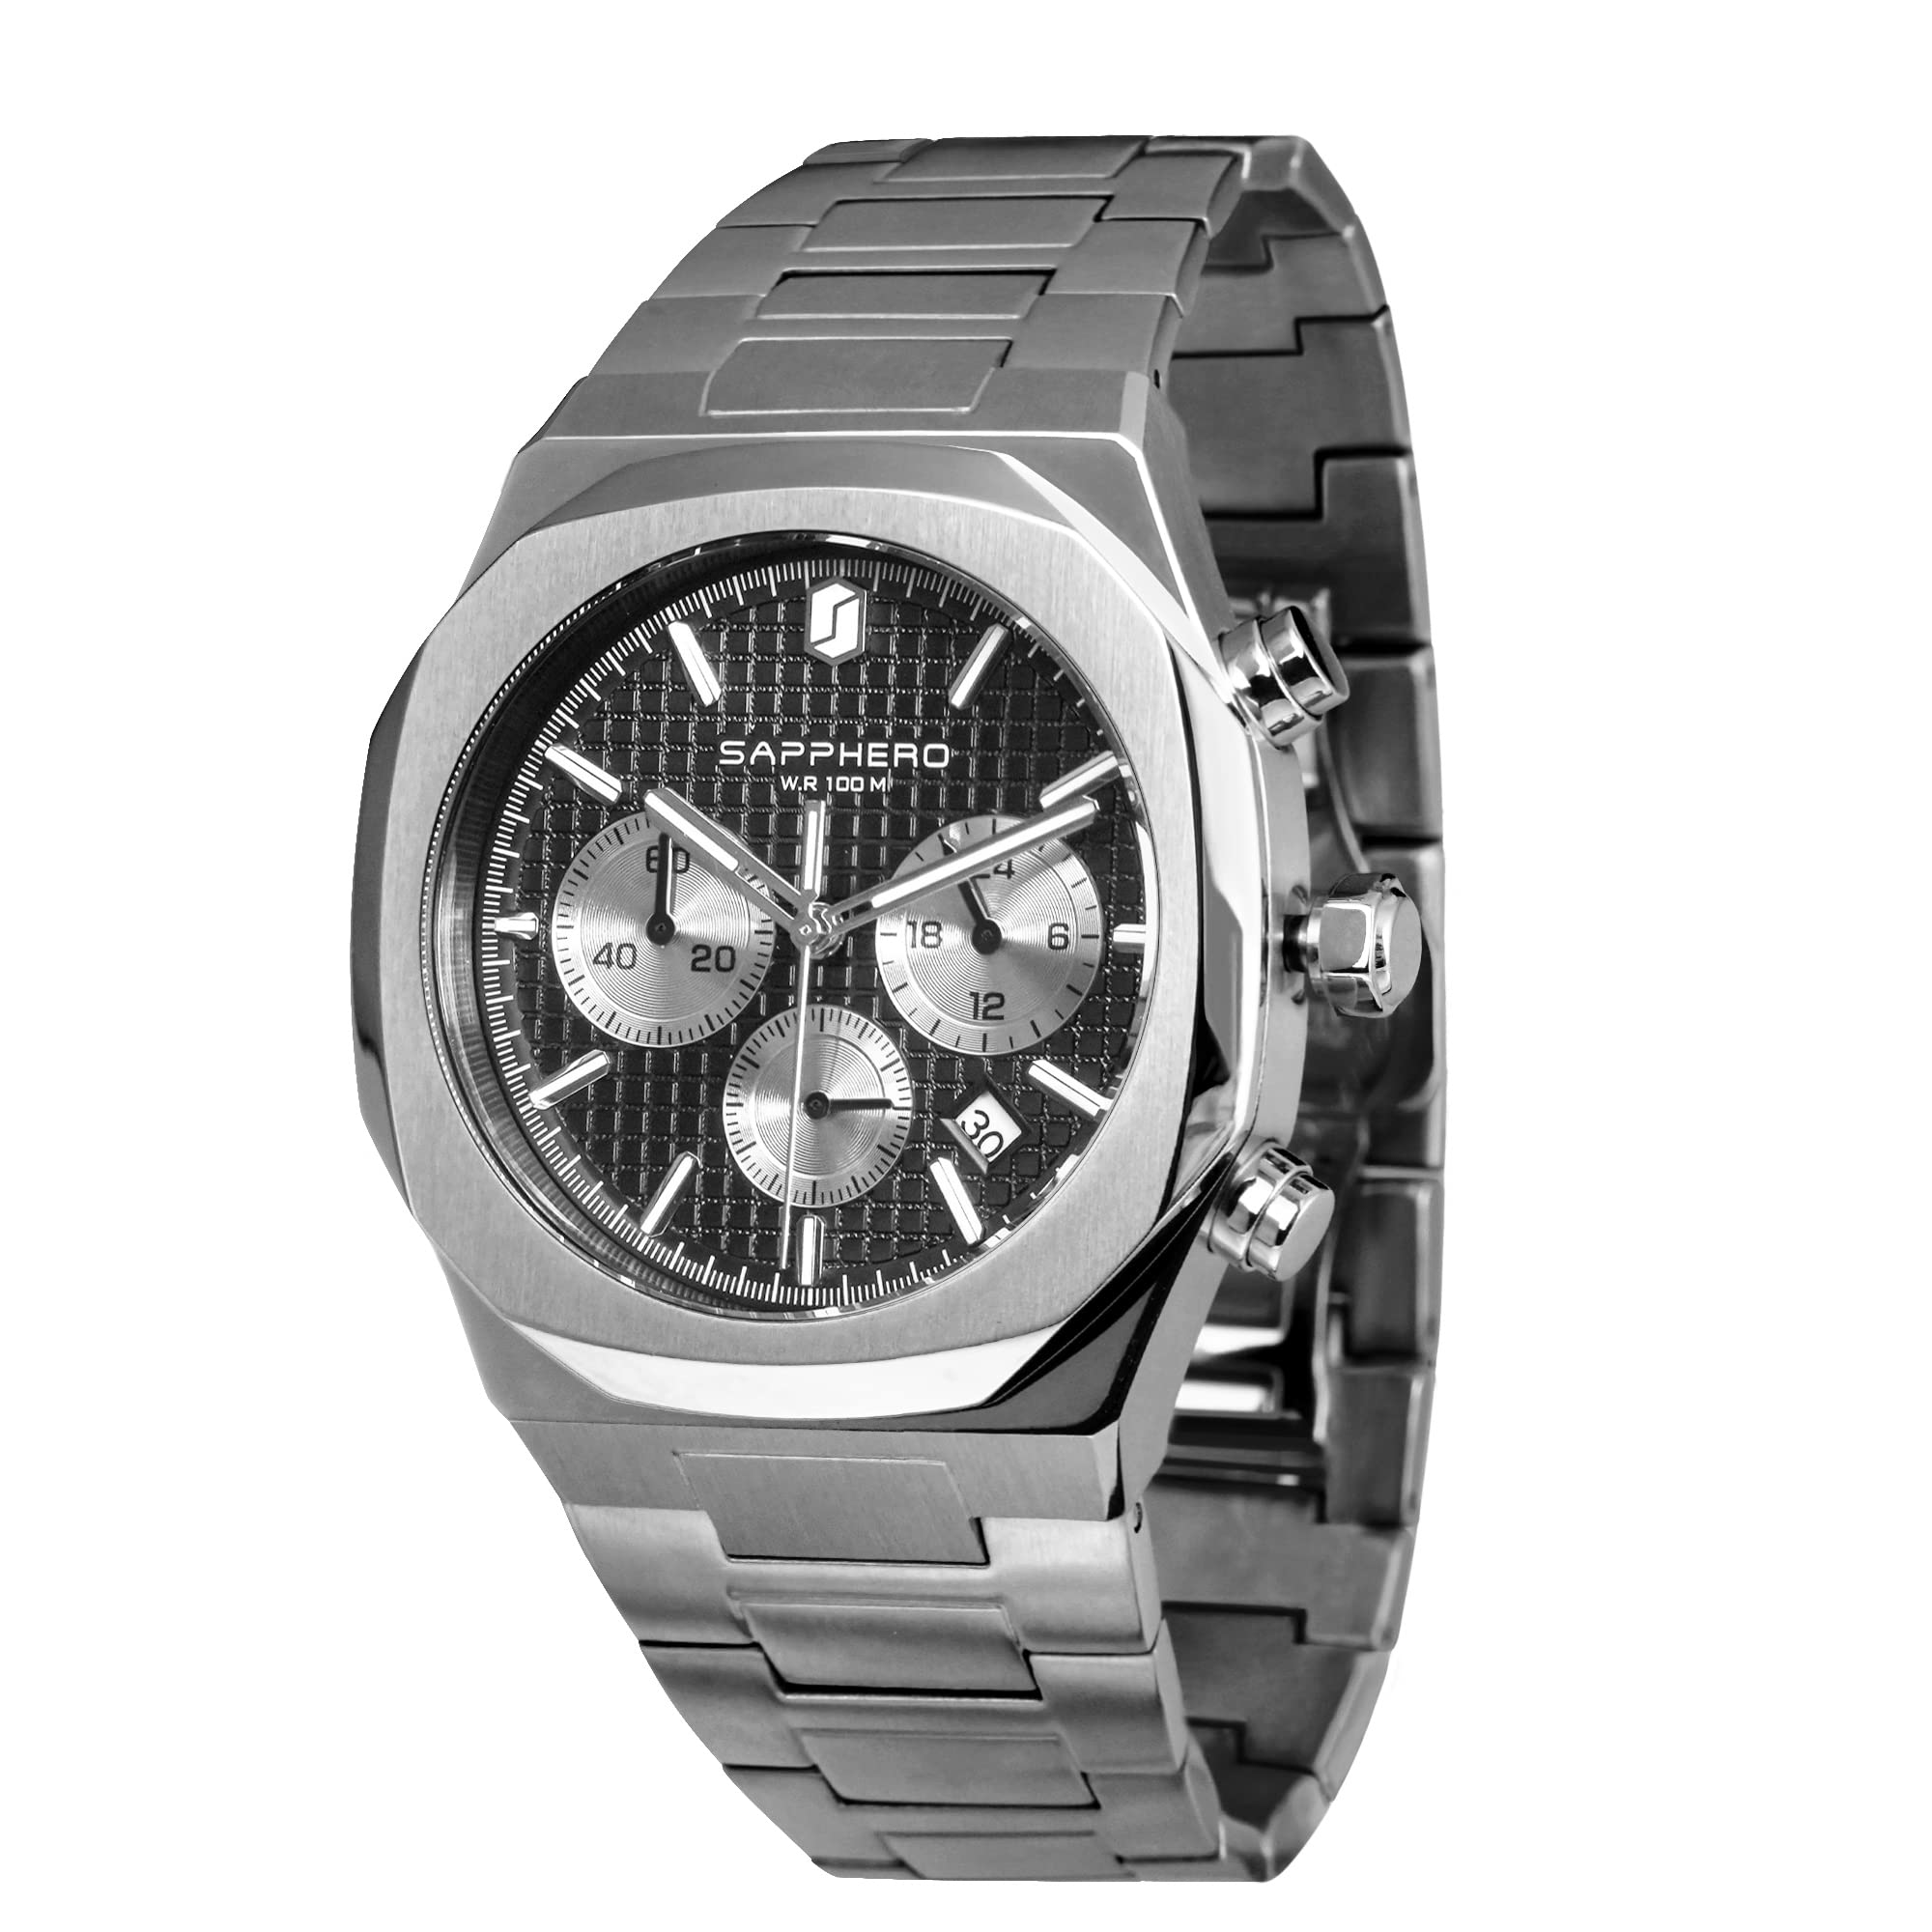 SAPPHERO Armbanduhr Herren Uhr Herren Edelstahl Japanisches Quarz-Uhrwerk 100M Wasserdicht Chronograph Multifunktional mit Date Lässig Business Uhren Männer